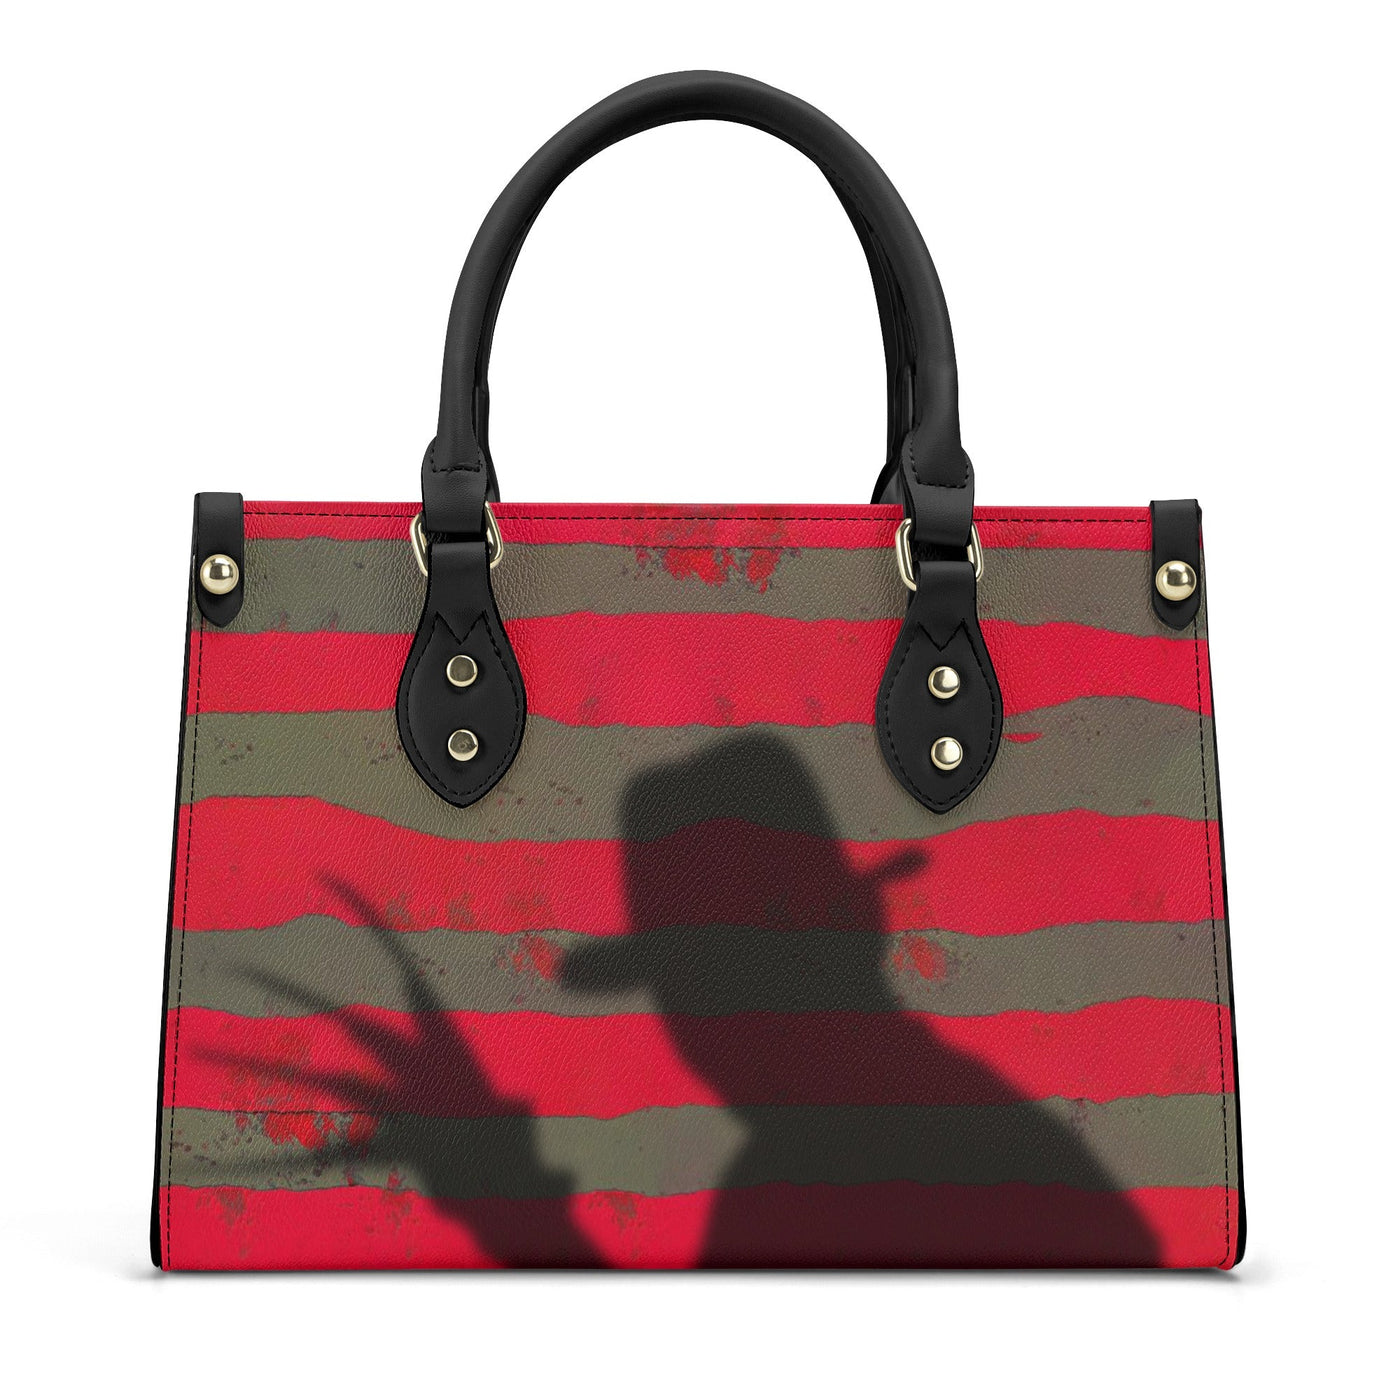 Freddy Krueger's Shadow Luxury Tote Handbag - The Nightmare on Elm Street